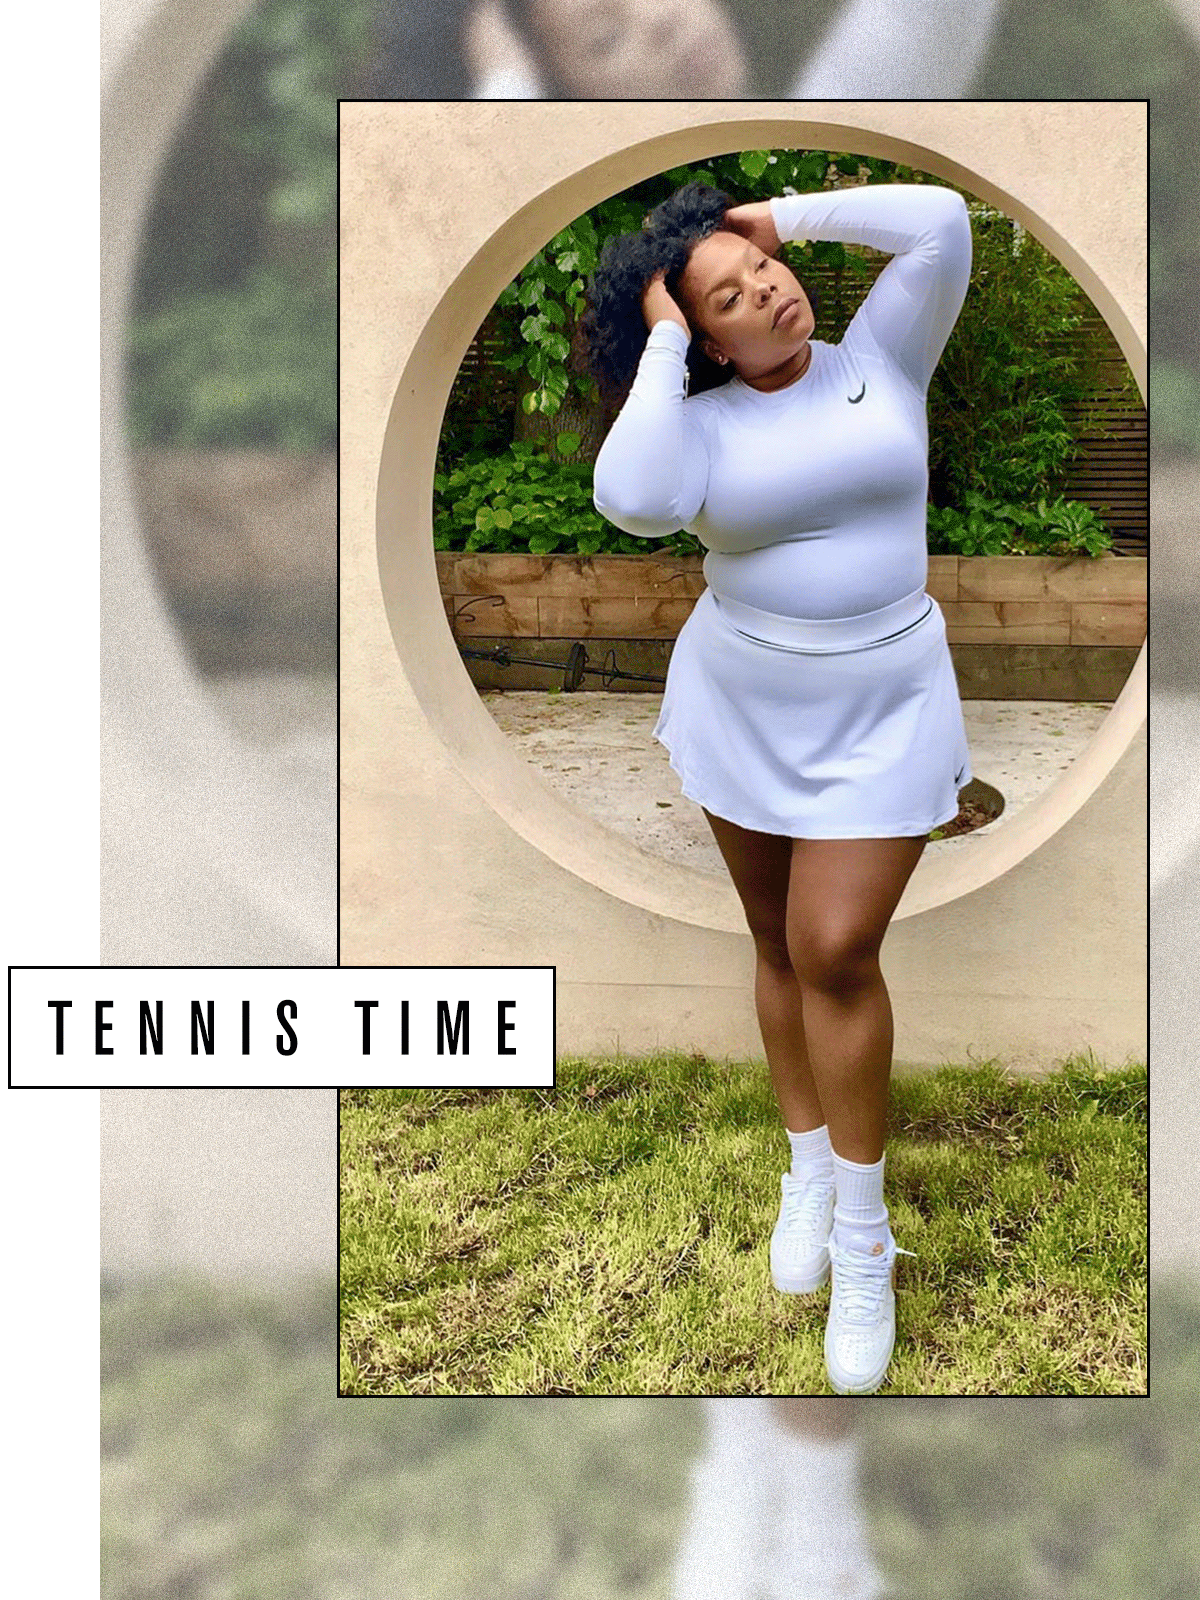 Trong thời trang hiện đại - mọi thứ đều có thể, ngay cả khi bạn muốn diện váy tennis đi chơi